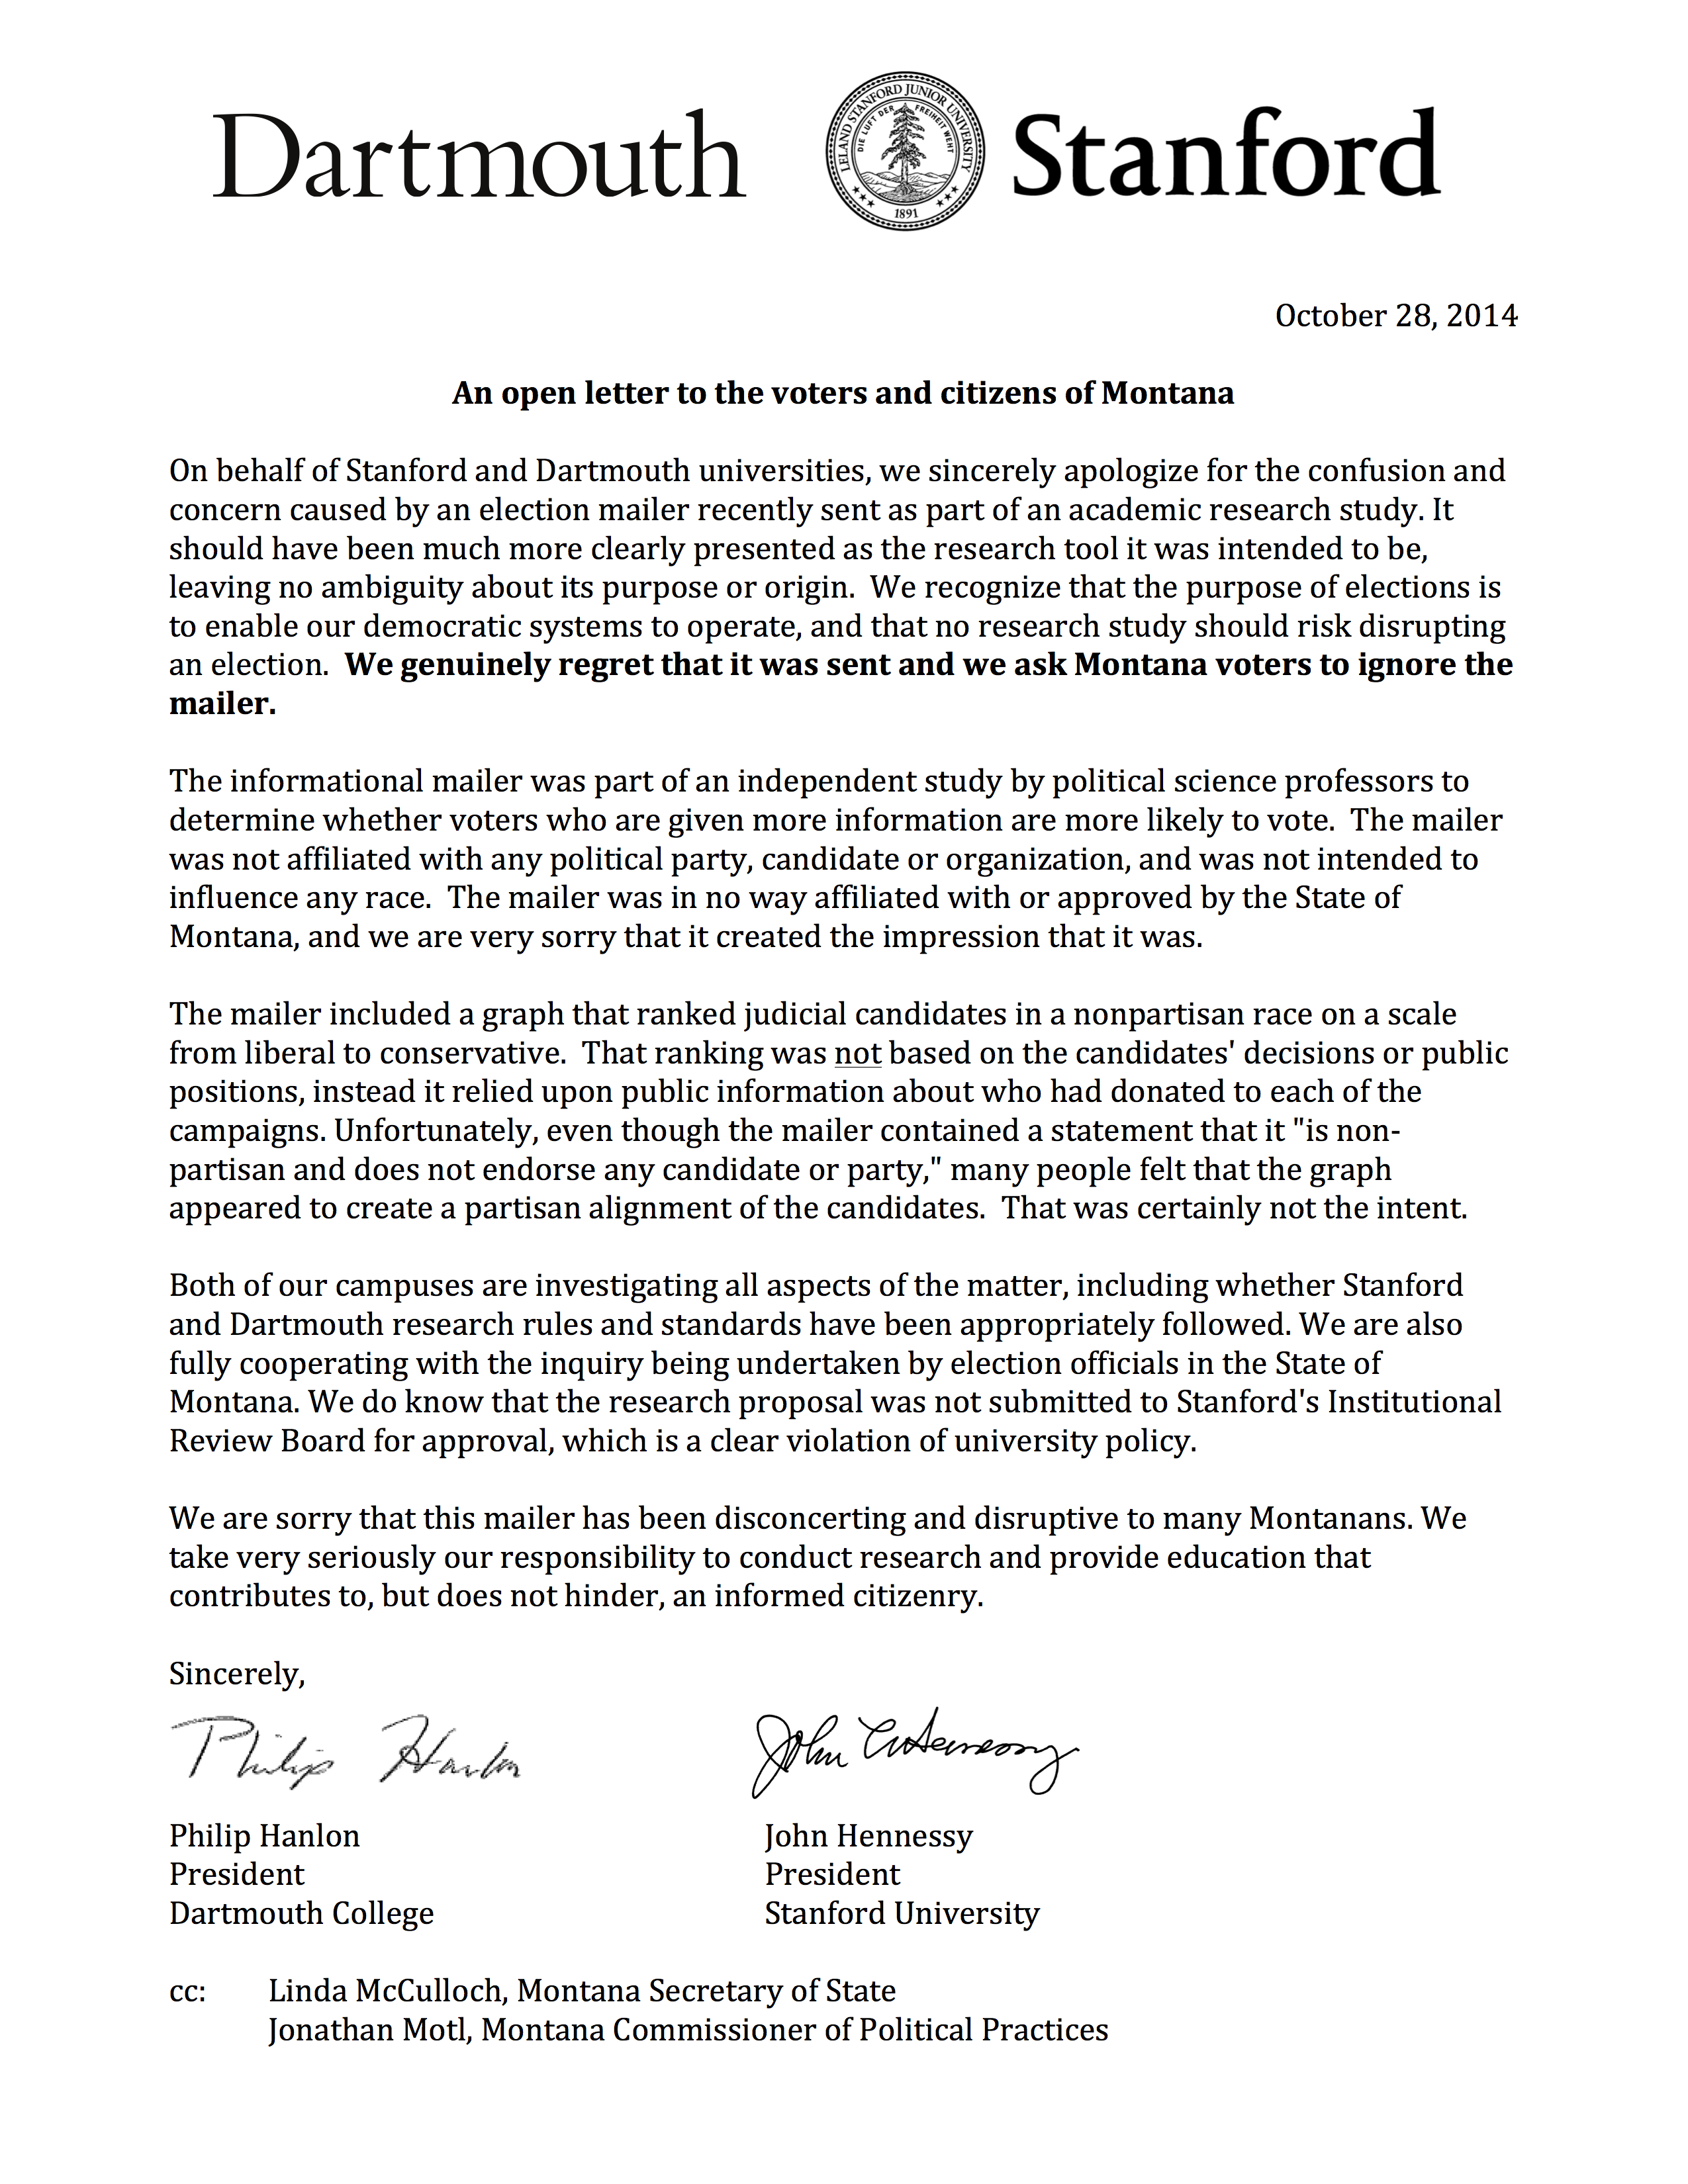 Рисунок 6.11. Письмо с извинениями, которое было отправлено 102 780 зарегистрированным избирателям в Монтане, получившим почтовую рассылку, показанную на рисунке 6.10. Письмо было направлено президентами Дартмута и Стэнфорда, университетами, которые использовали исследователей, отправивших почтовую программу. Воспроизводится из Motl (2015).